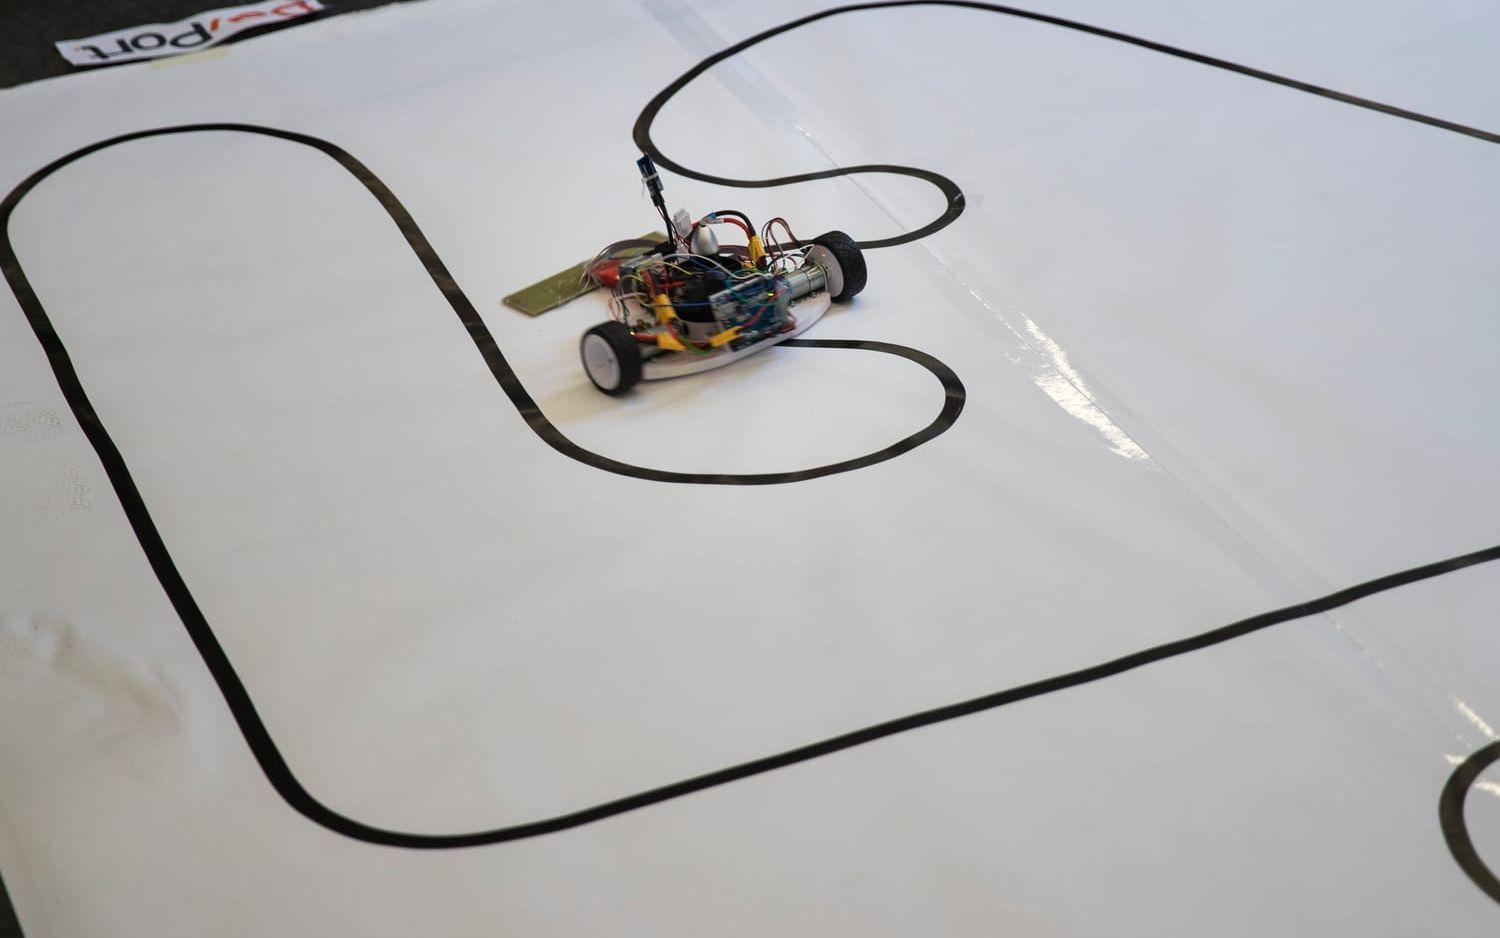 I linjefölje ska roboten åka så snabbt som möjligt efter en bana utan att köra av linjen. Bild: Anders Ylander